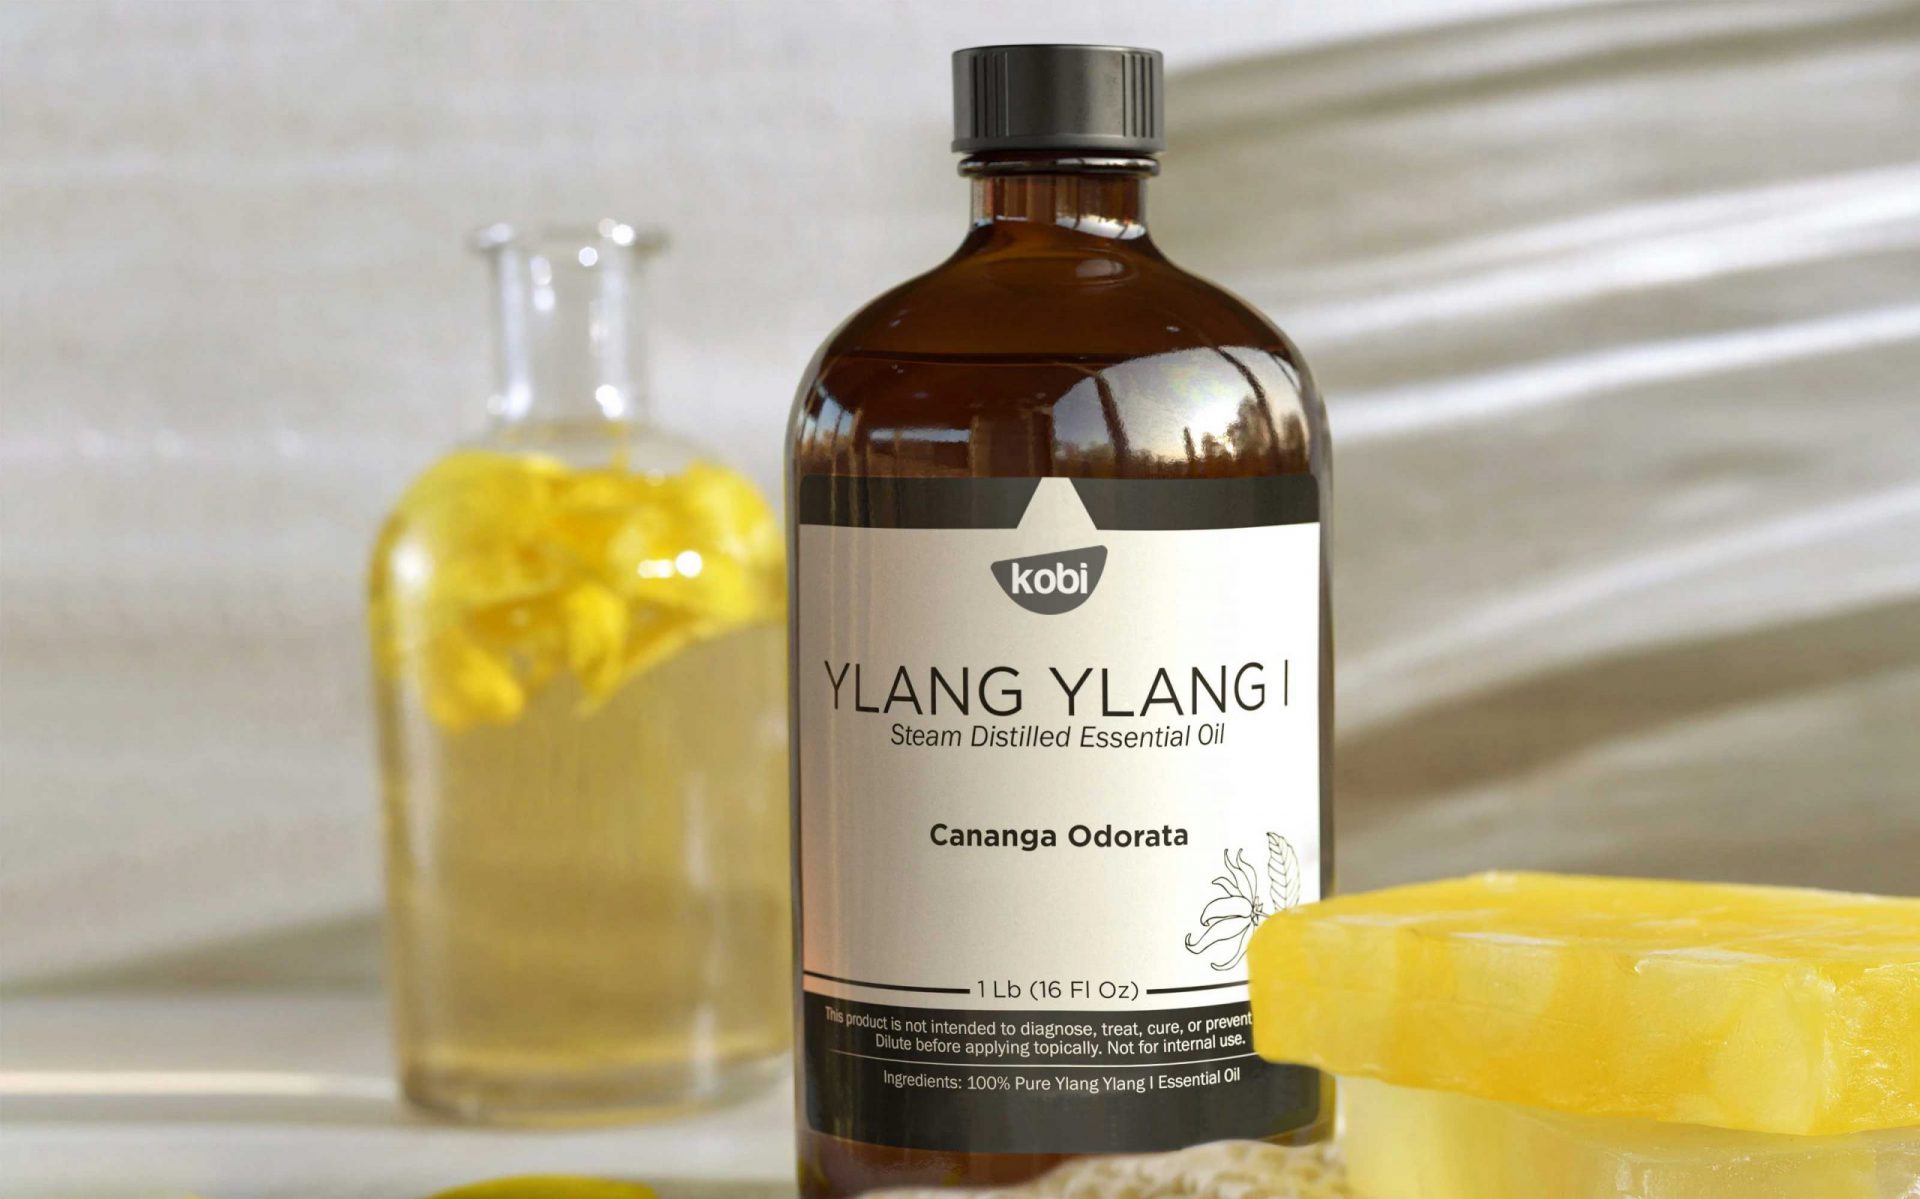 Tinh dầu ngọc lan tây Kobi (Ylangylang essential oil)